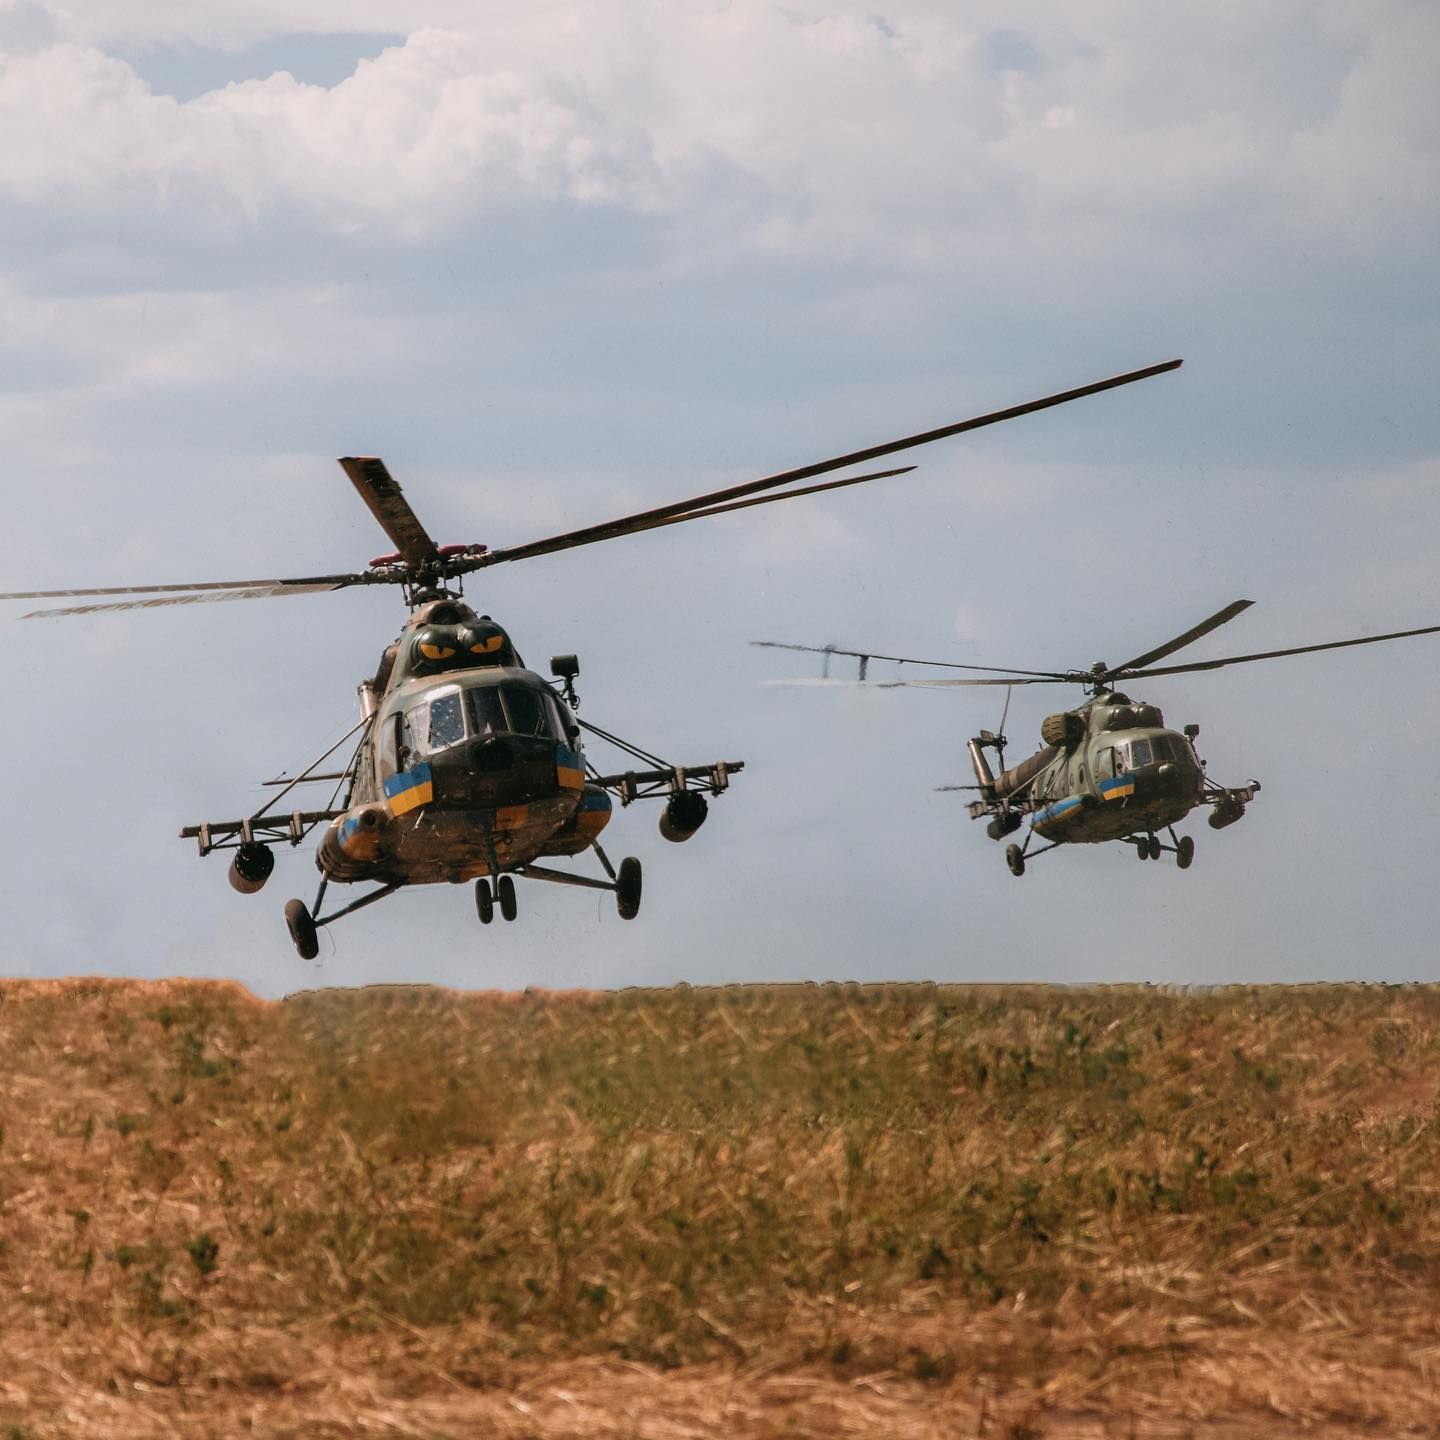 29 серпня у Краматорському районі Донецької області впали два військові гелікоптери Мі-8.